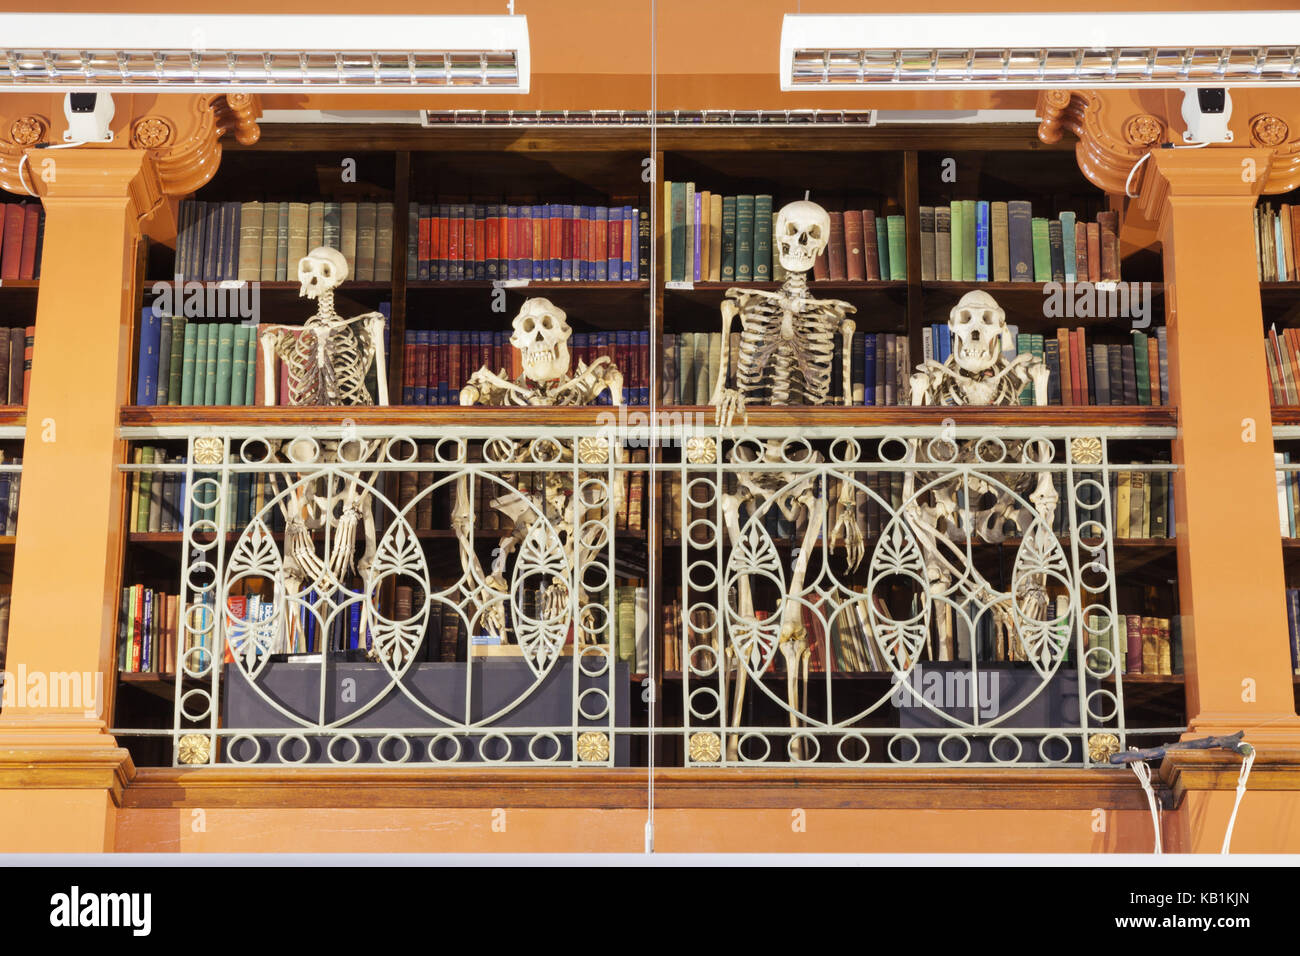 Inglaterra, Londres, Universidad de Londres, el museo de Zoología grant, divertida exposición de monos a esqueletos, Foto de stock